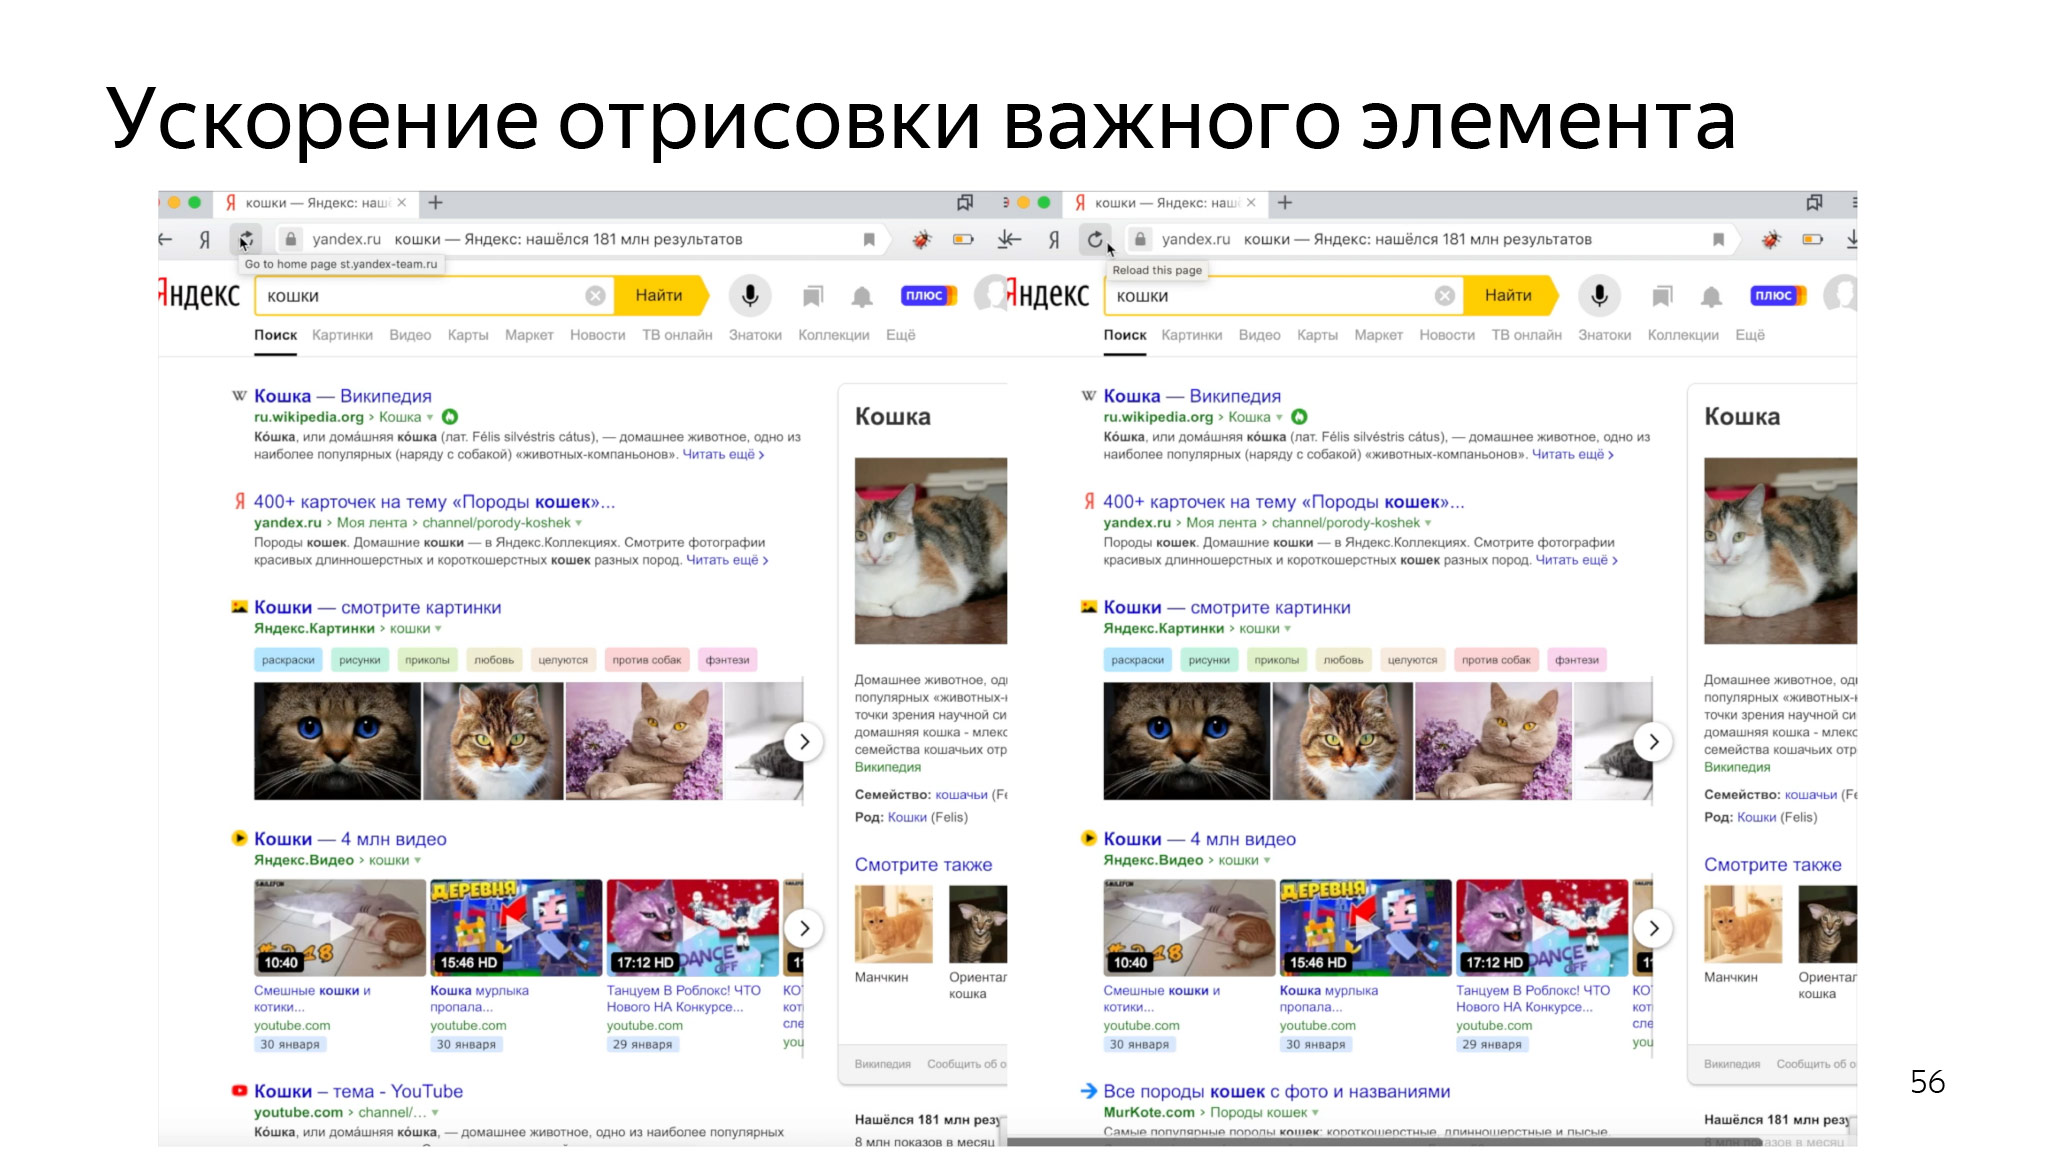 Как сэкономить ресурсы в браузере и не сломать веб. Доклад Яндекса - 40